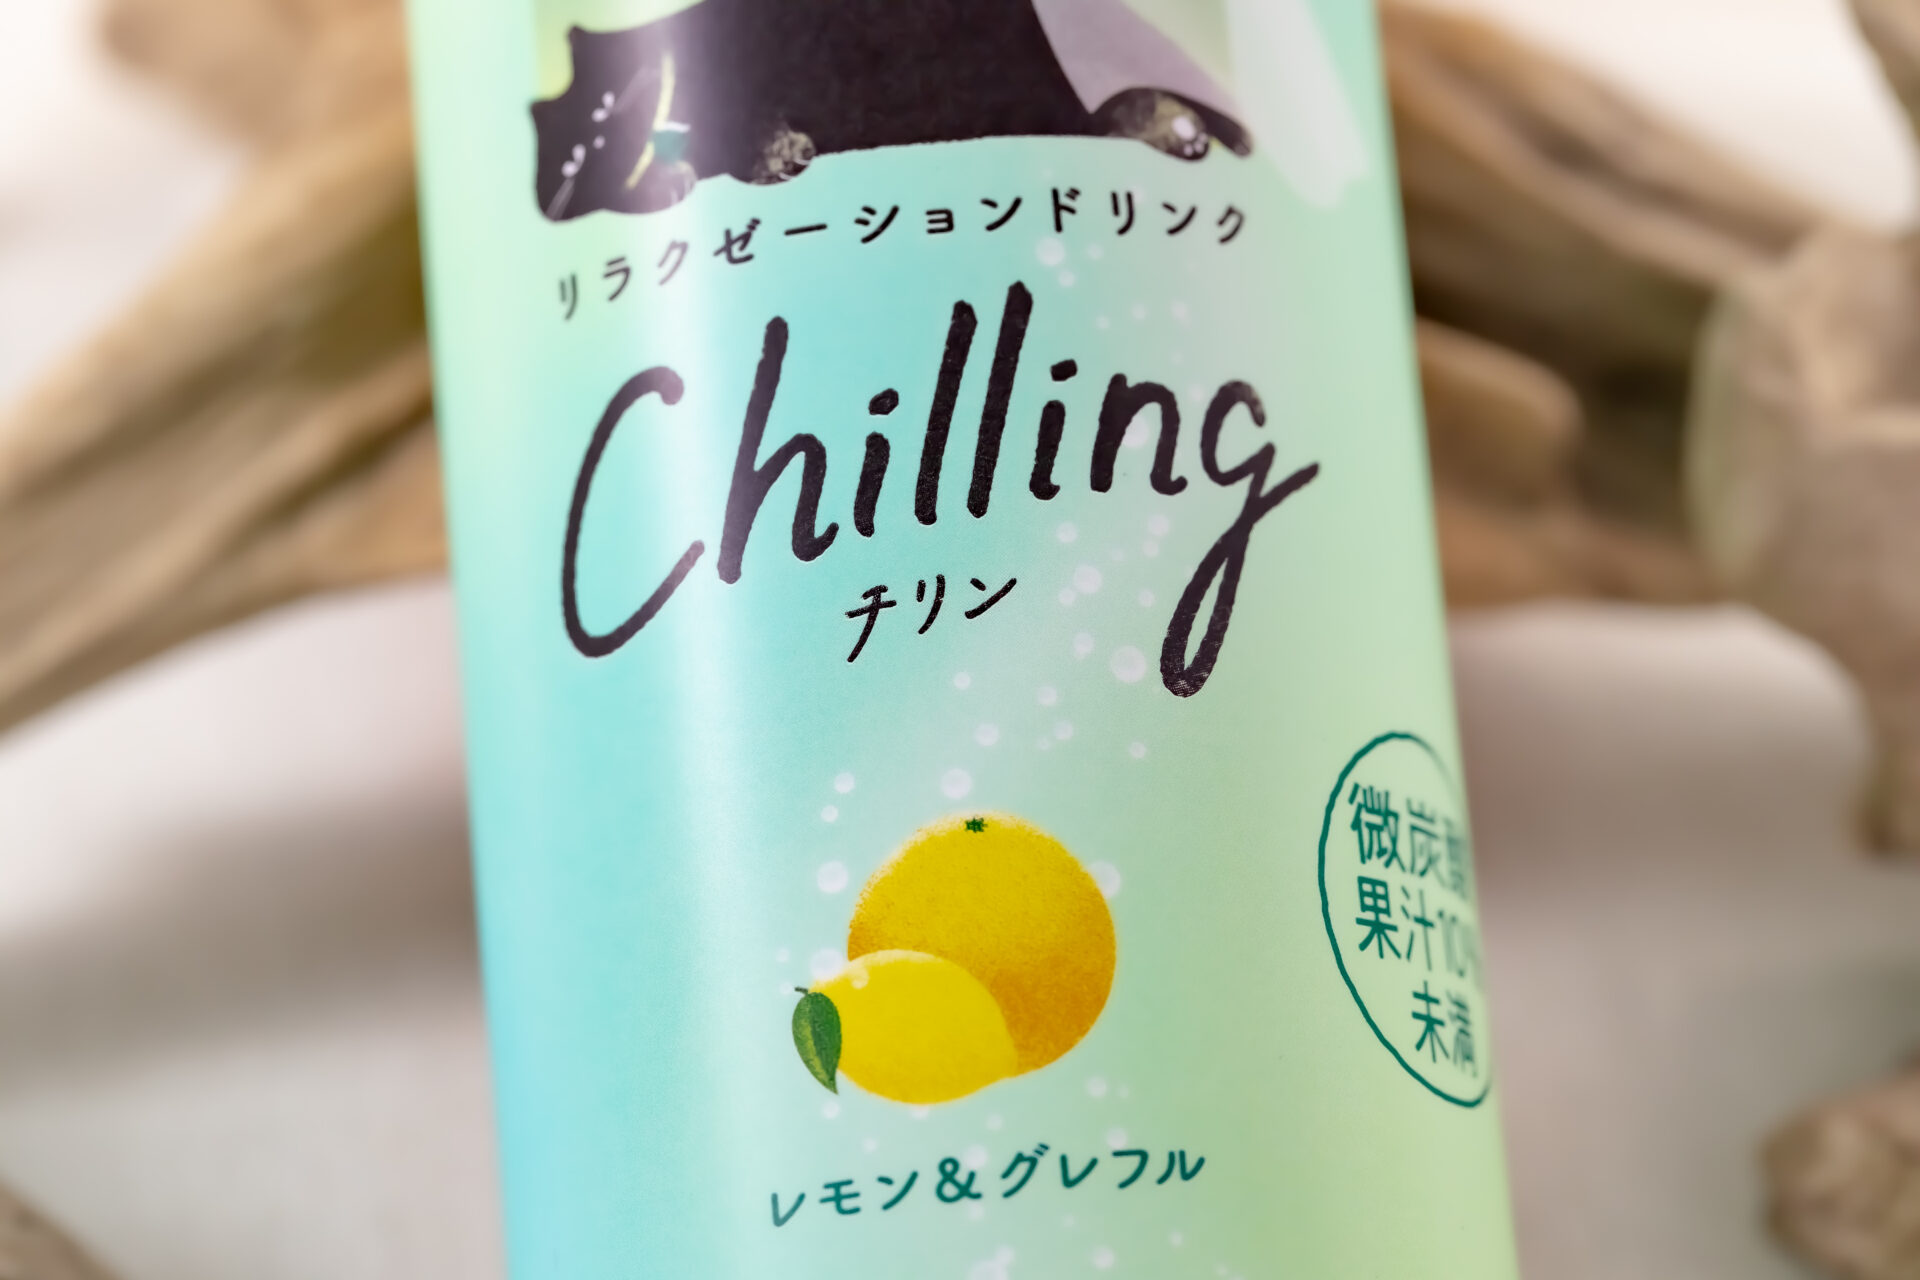 サントリー『Chilling-チリン- レモン＆グレフル』